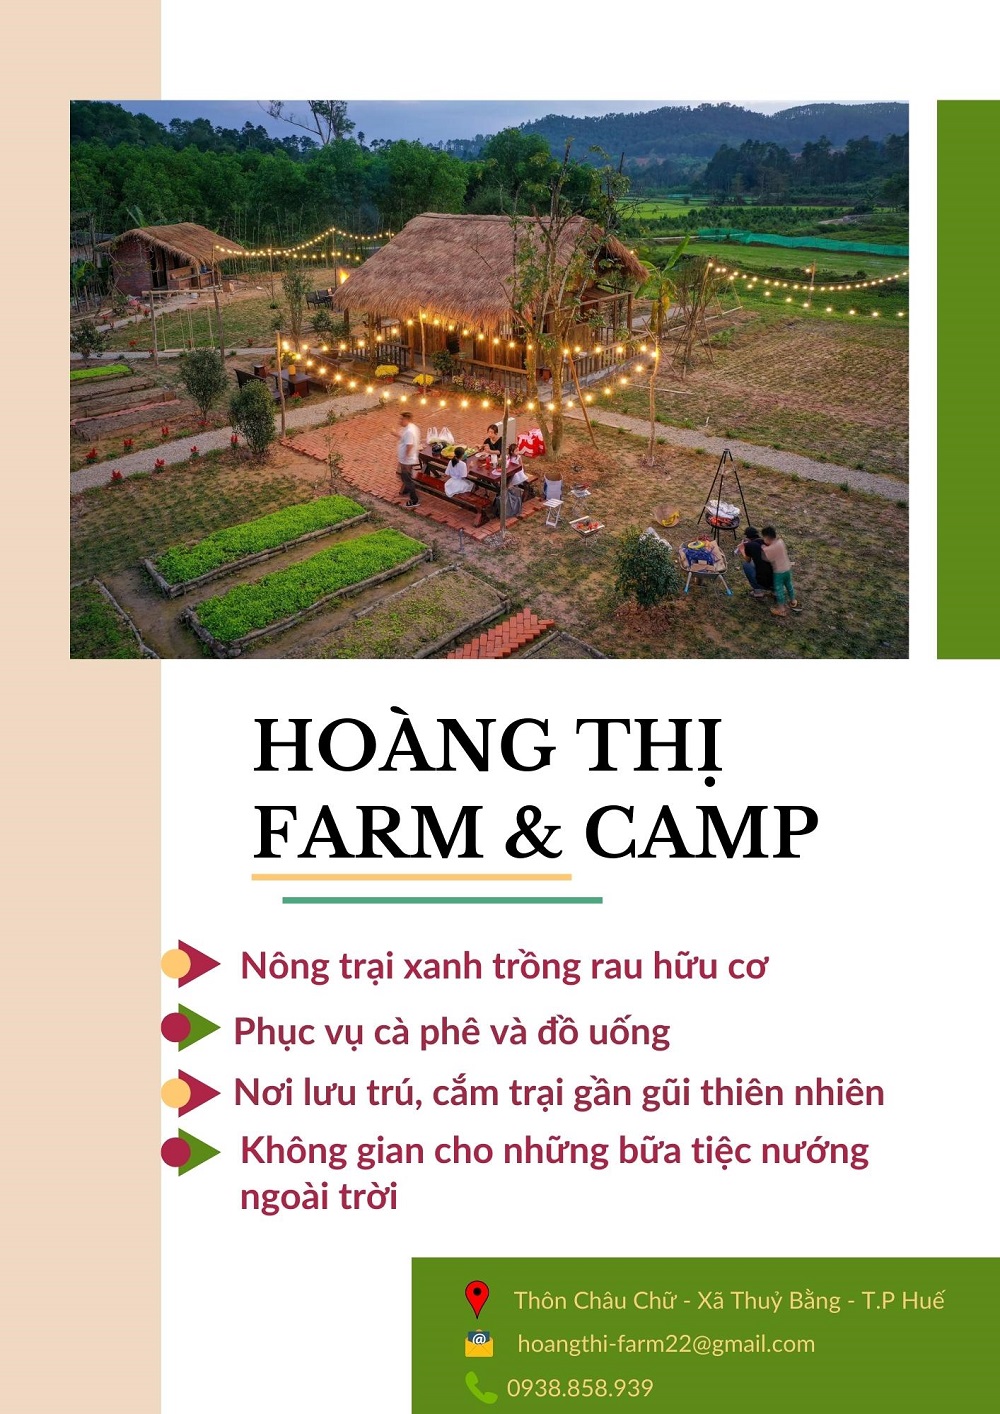 Hoàng Thị Farm, Nông trại hữu cơ đẹp, ở Huế, điểm checkin huế